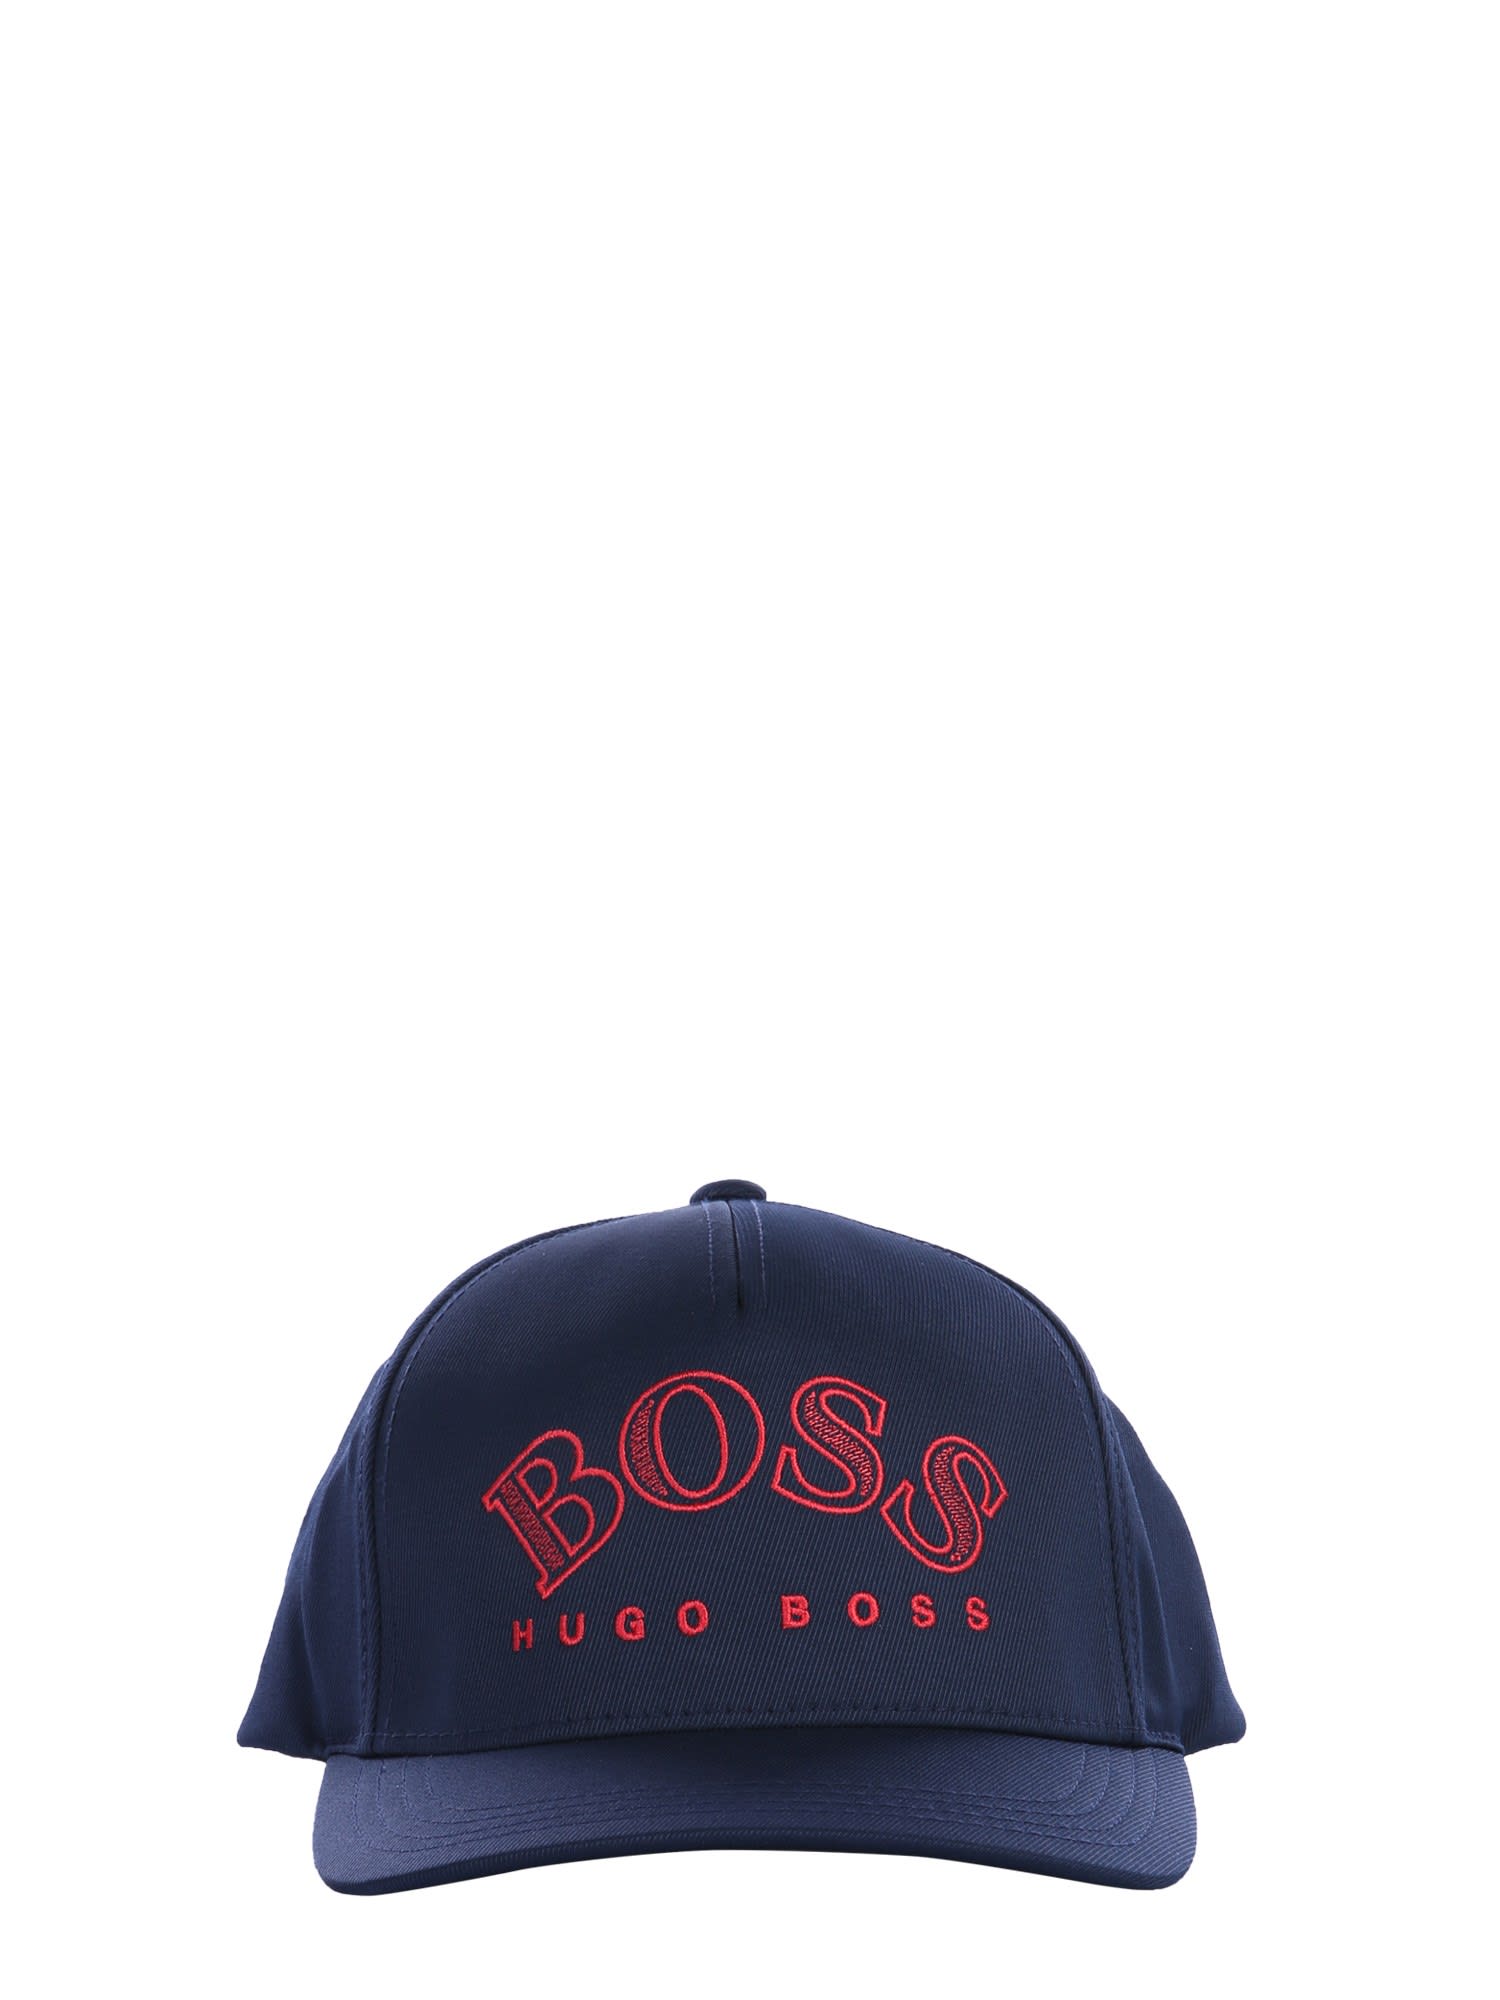 HUGO BOSS BASEBALL HAT,11245331